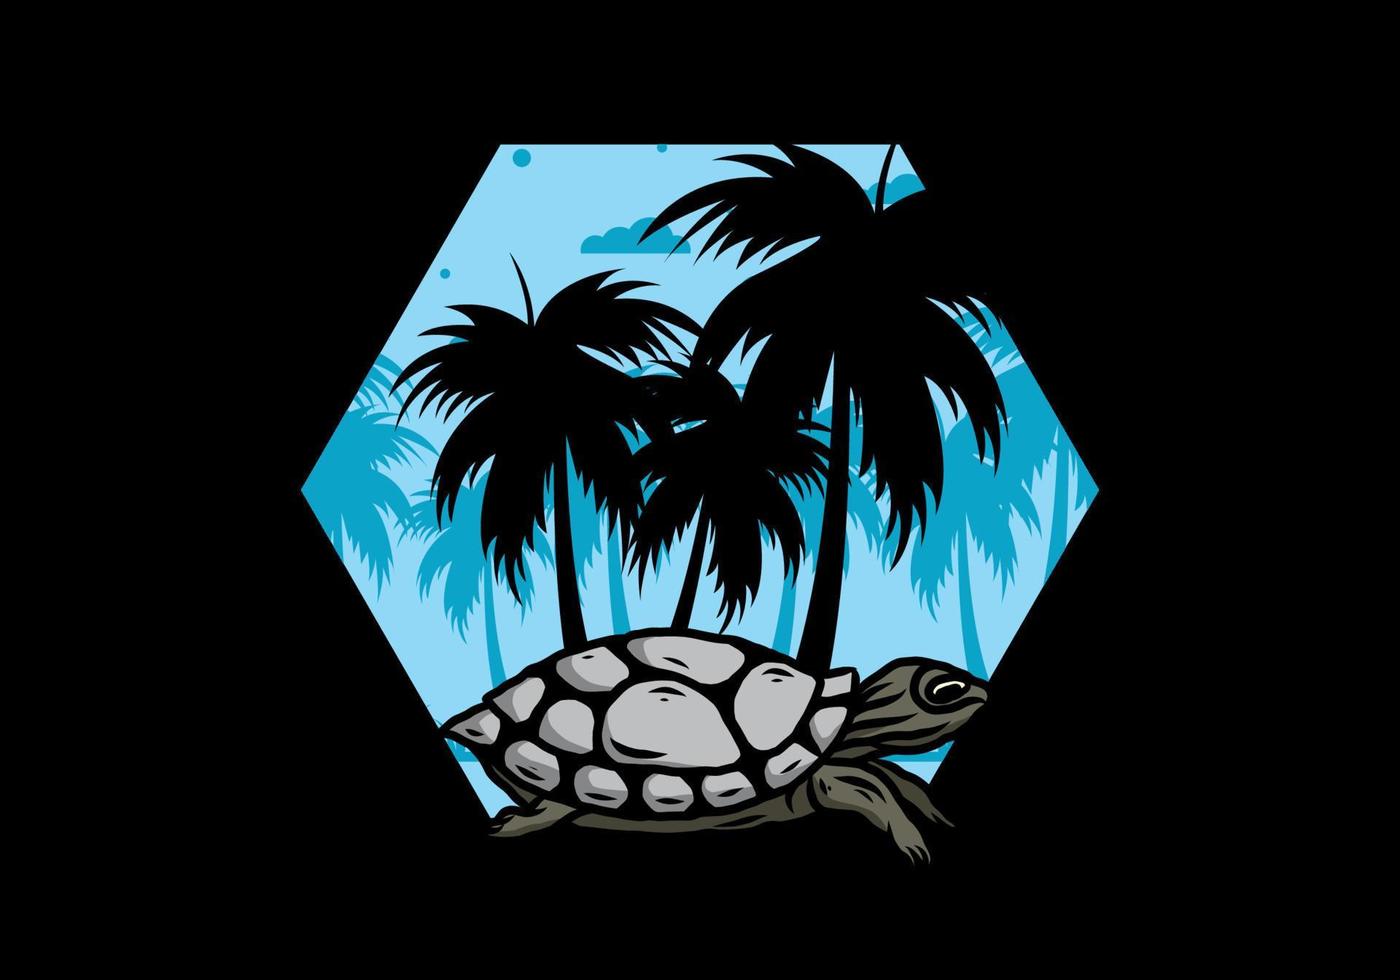 zeeschildpad onder de kokospalm illustratie vector